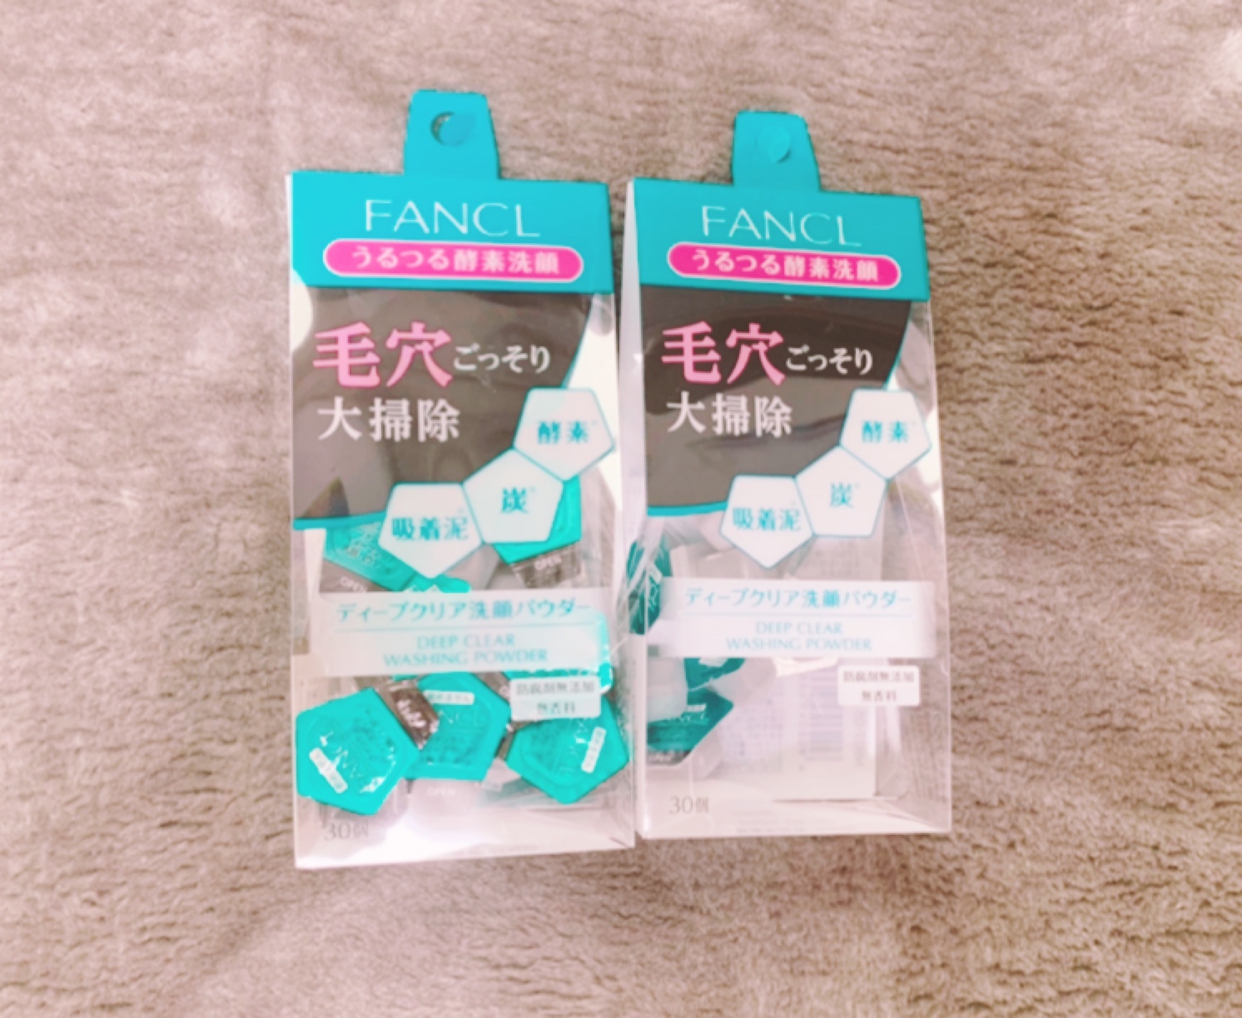 FANCL(ファンケル) ディープクリア洗顔パウダーを使ったzawaさんさんのクチコミ画像1